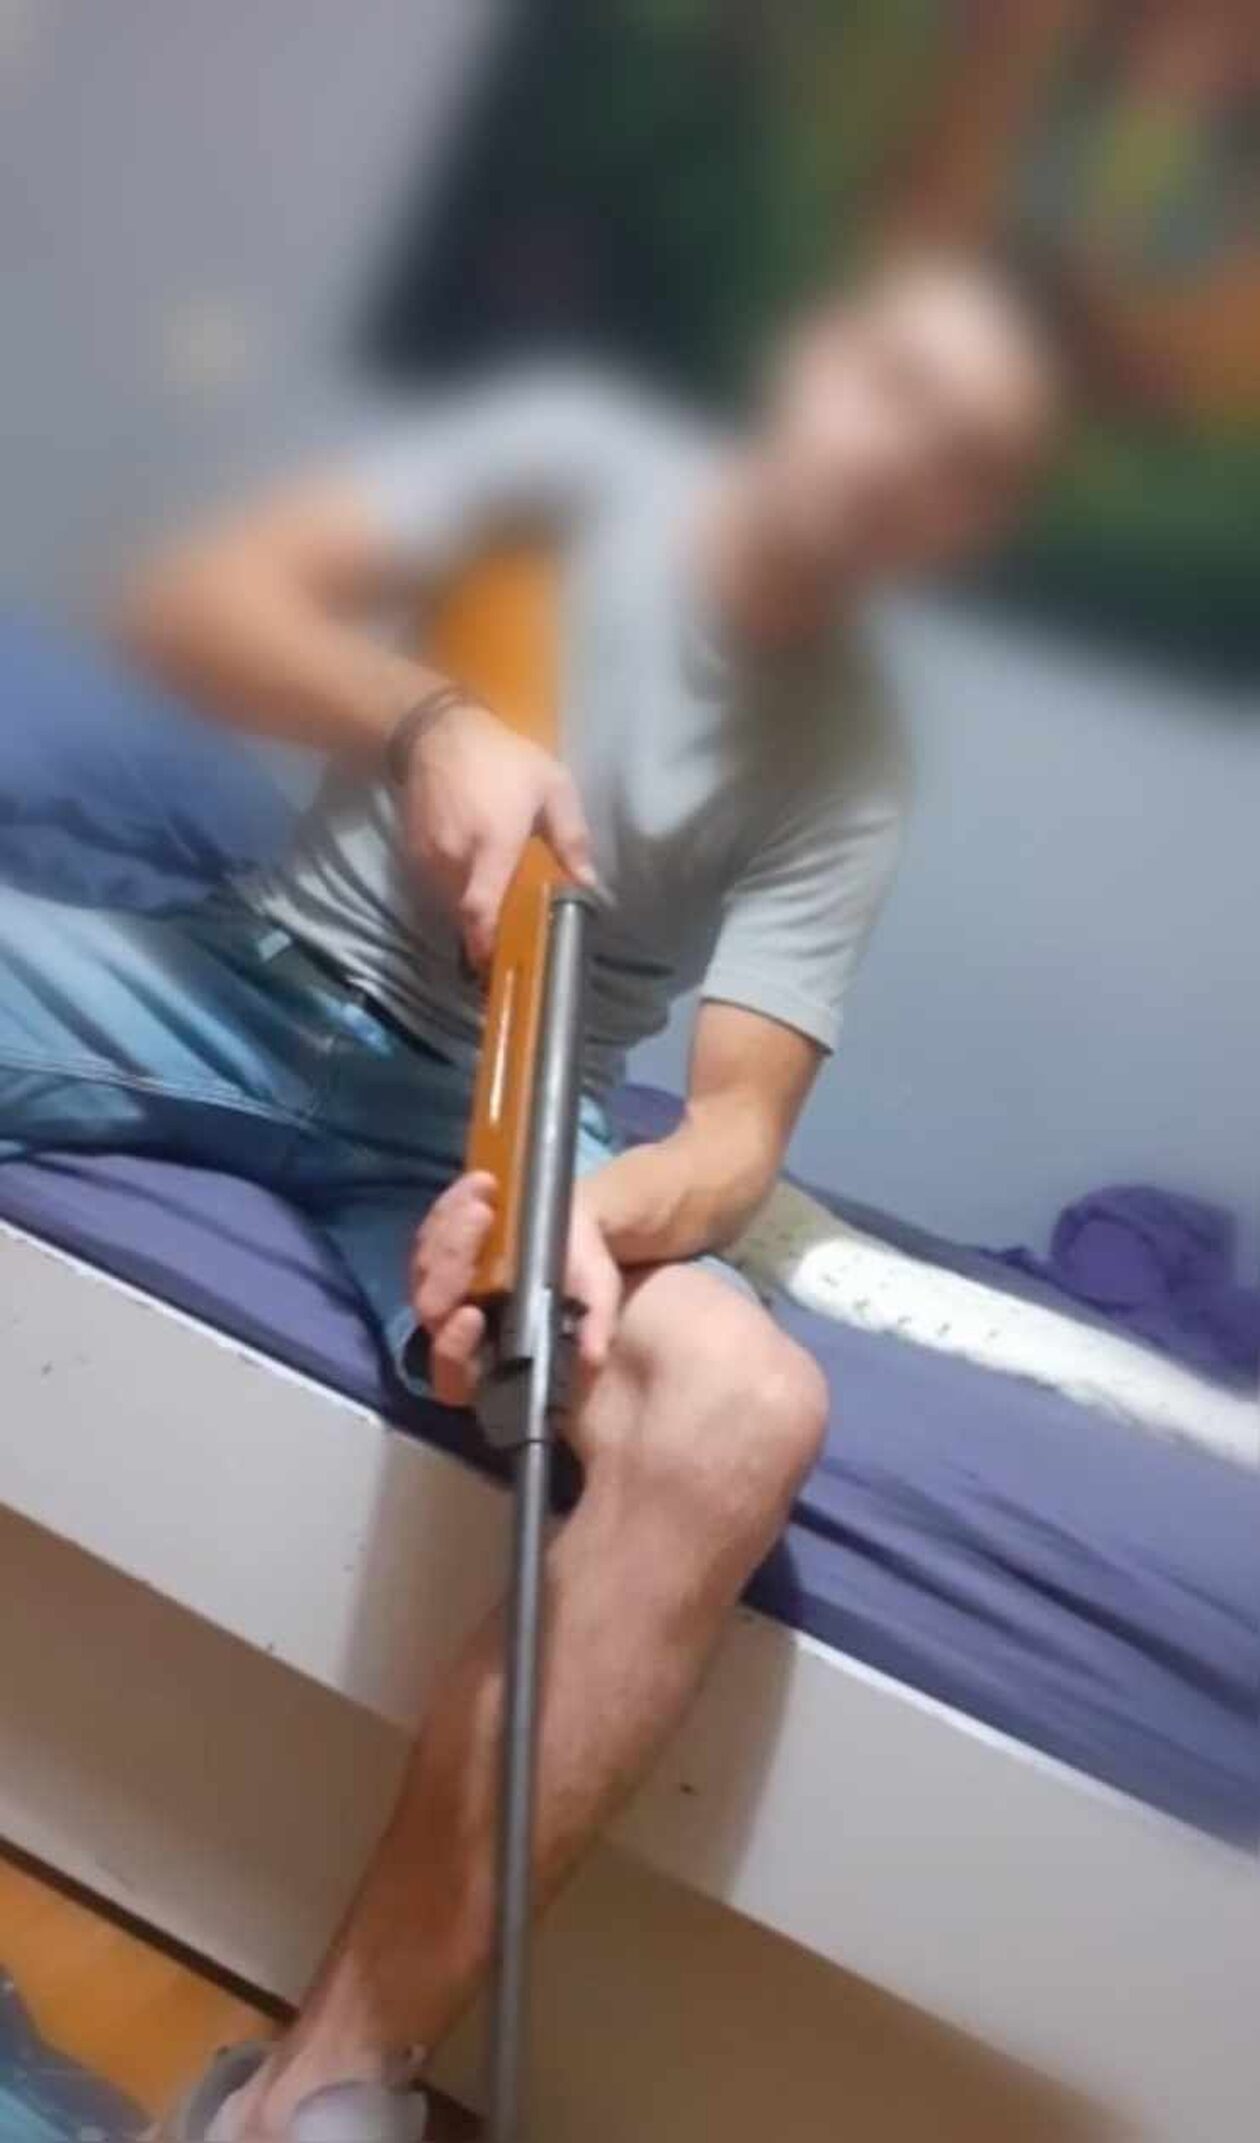 Κύκλωμα μαστροπείας: Αυτός είναι ο σύντροφος της 25χρονης - Ποζάρει με όπλο στο διαδίκτυο